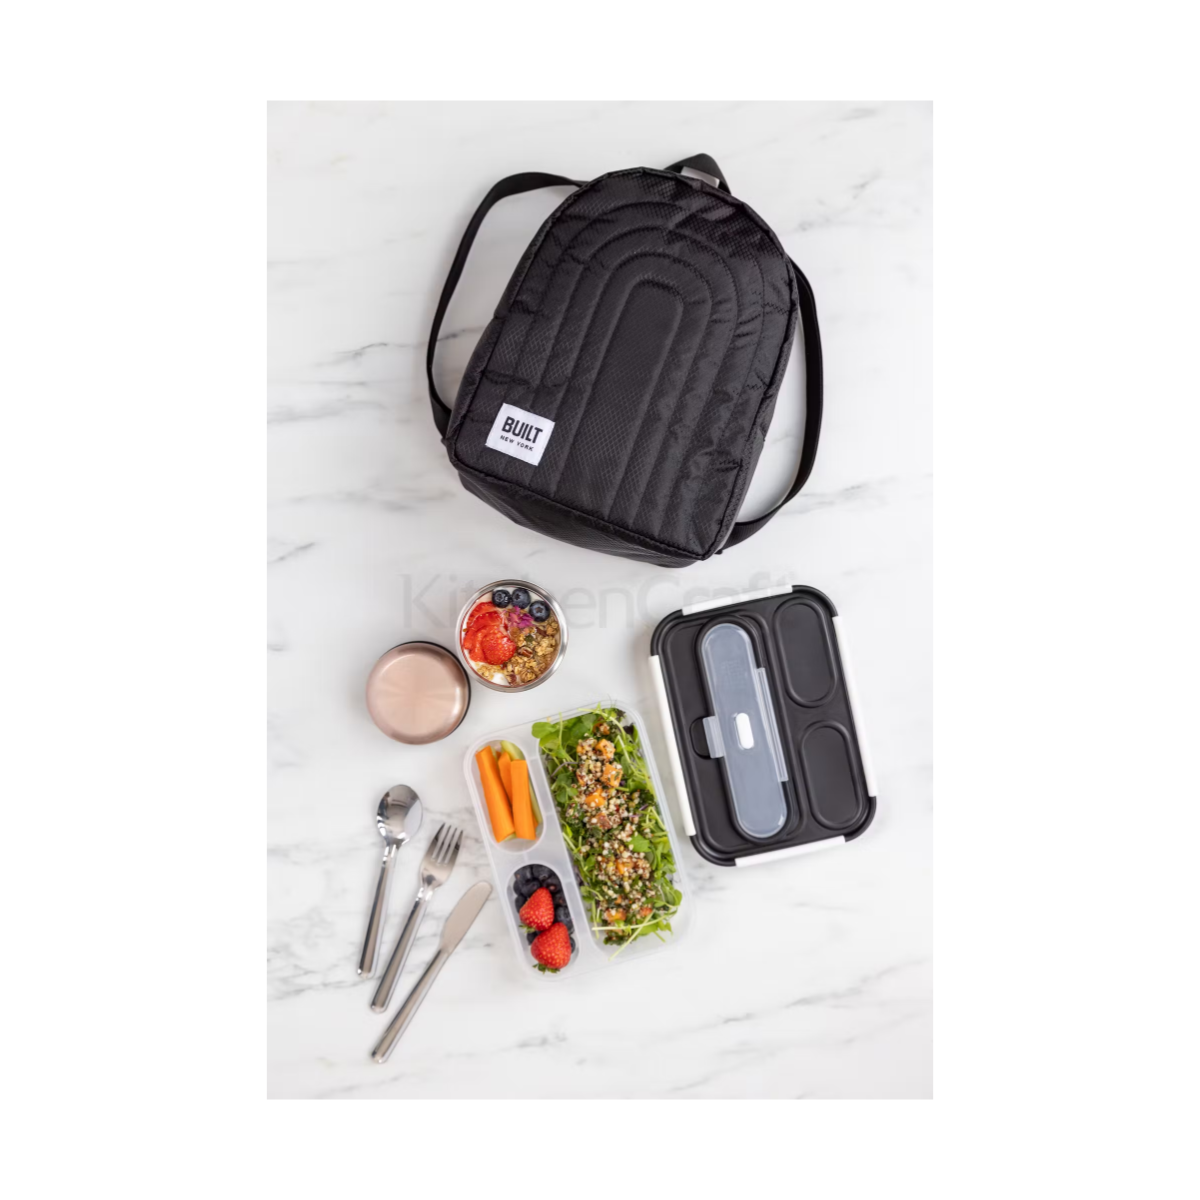 A mochila térmica é uma solução elegante e prática para a vida diária, ajudando a reduzir o desperdício do dia a dia com uma mochila reutilizável.